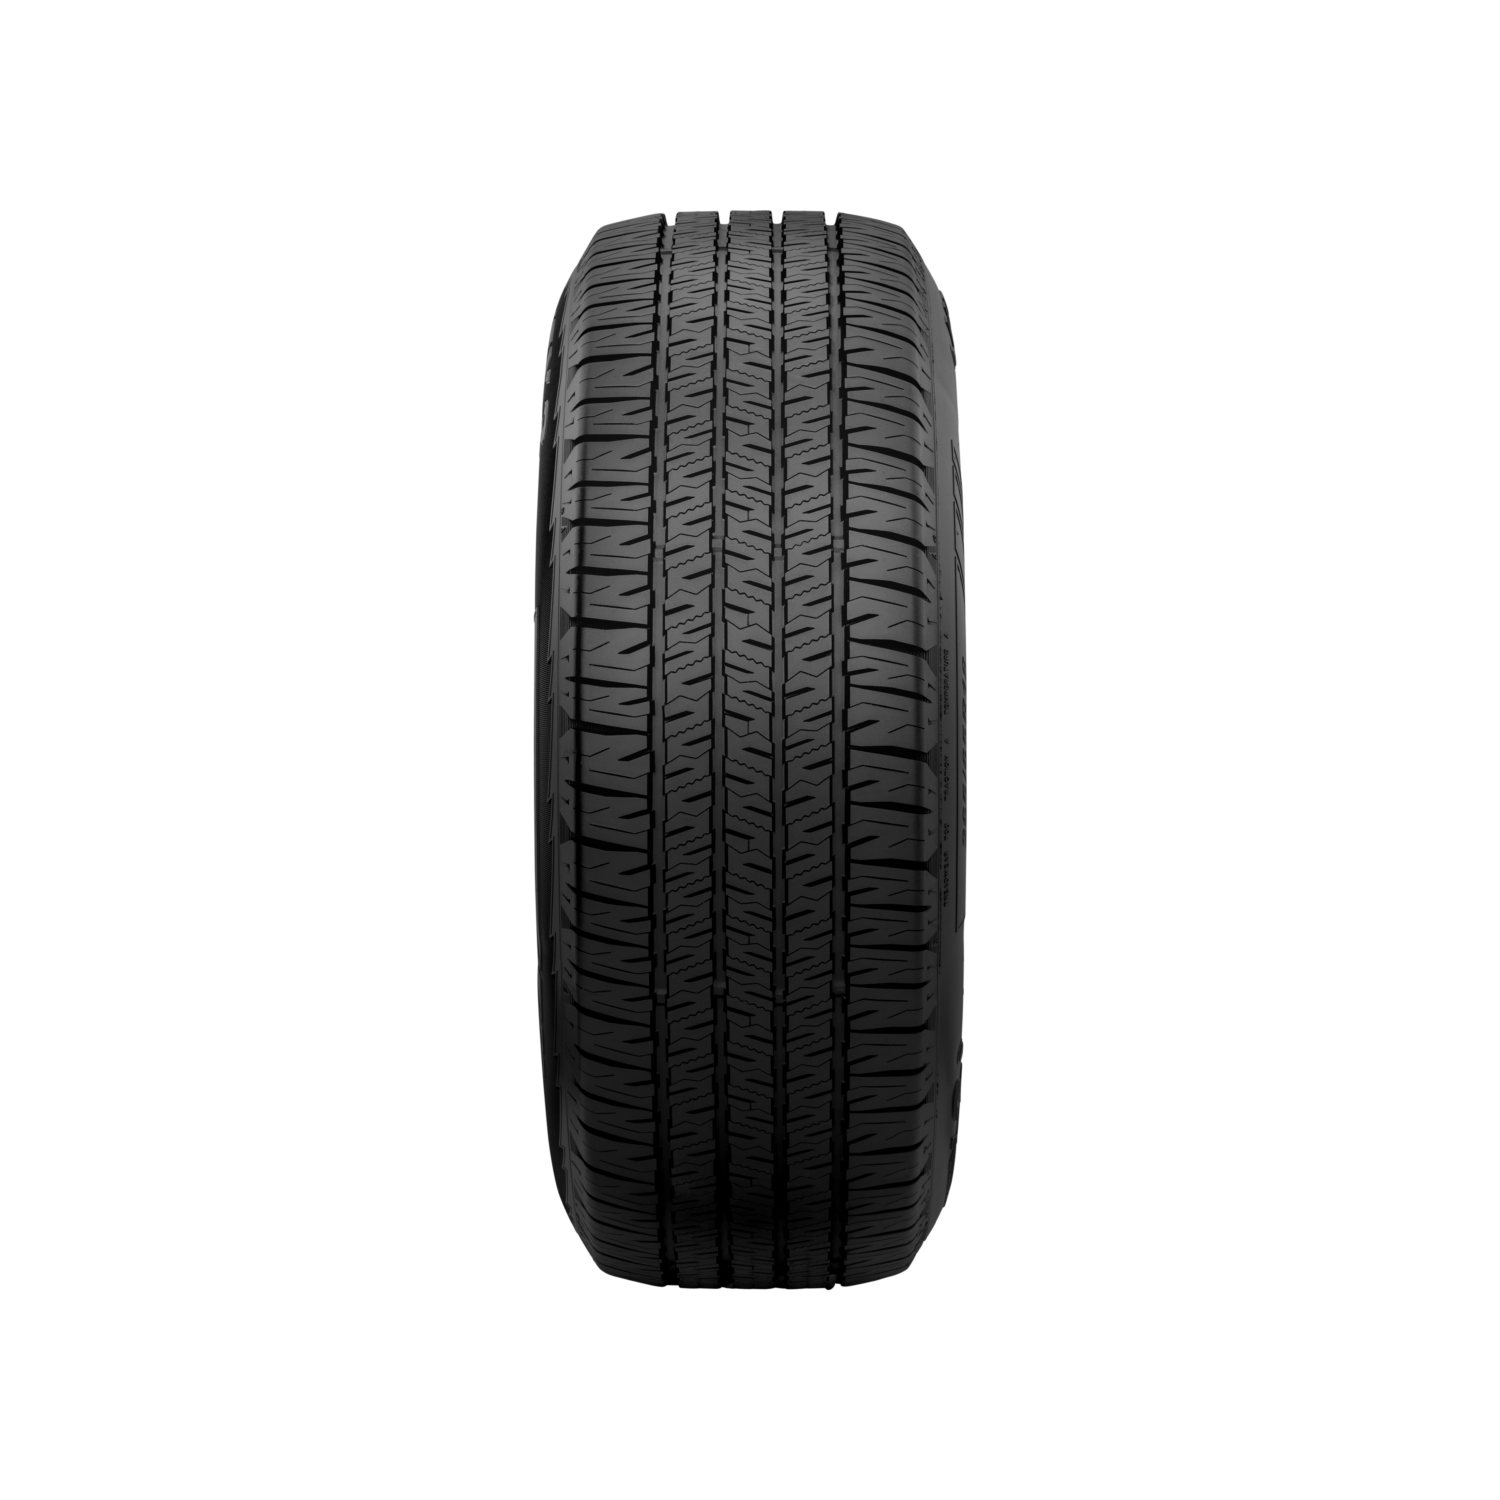 Tread view of NEXEN Roadian HTX2 tyre